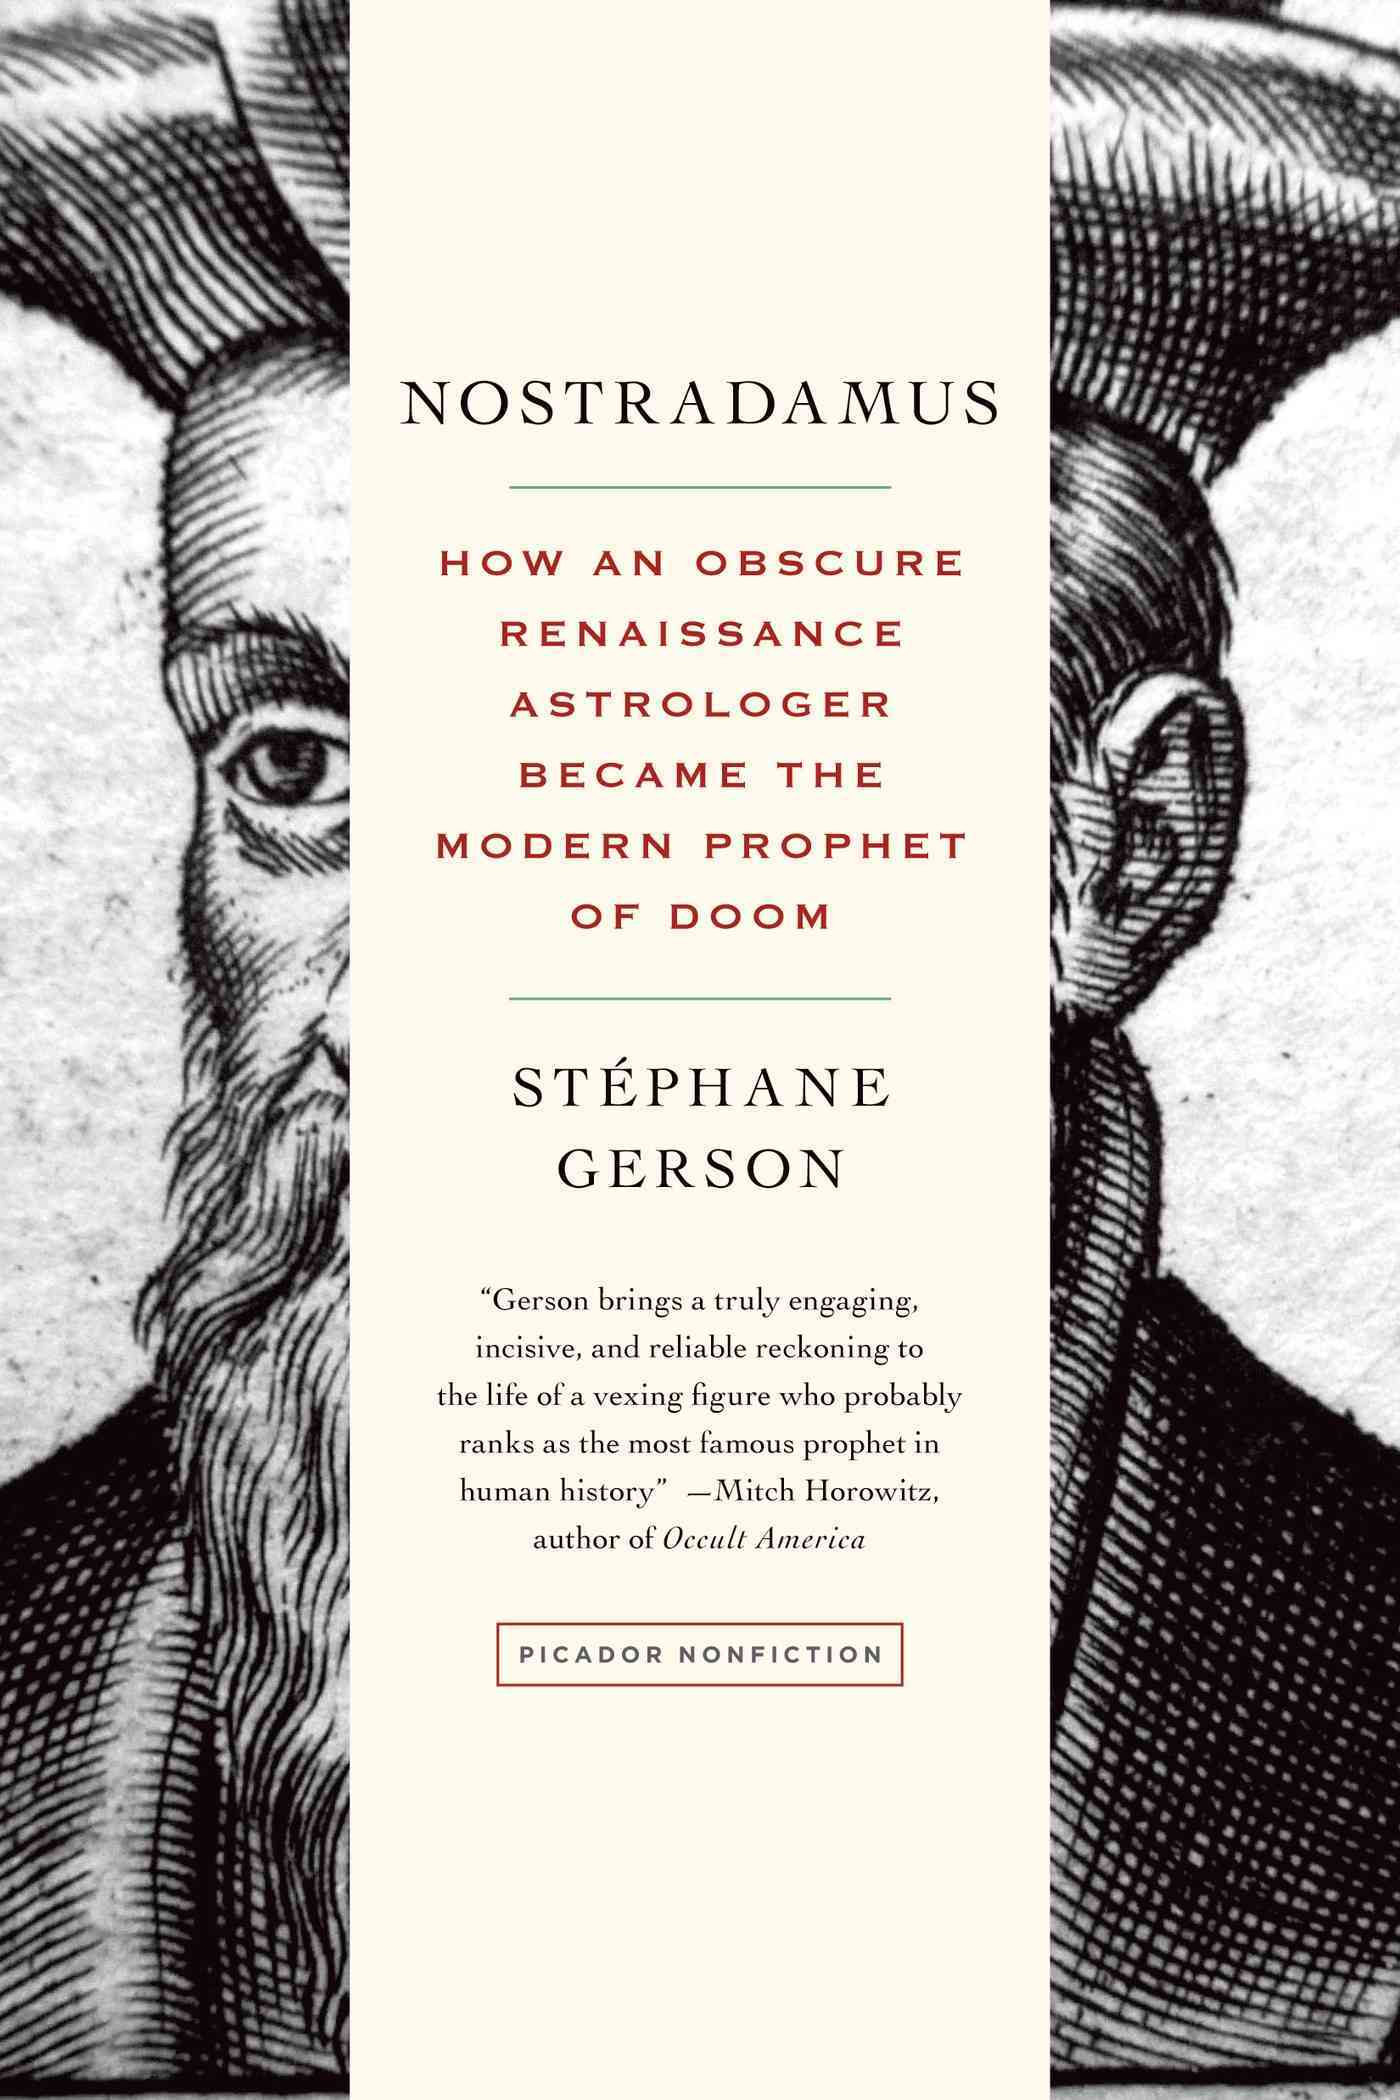 ACCENT: NOSTRADAMUS by Stephane Gerson